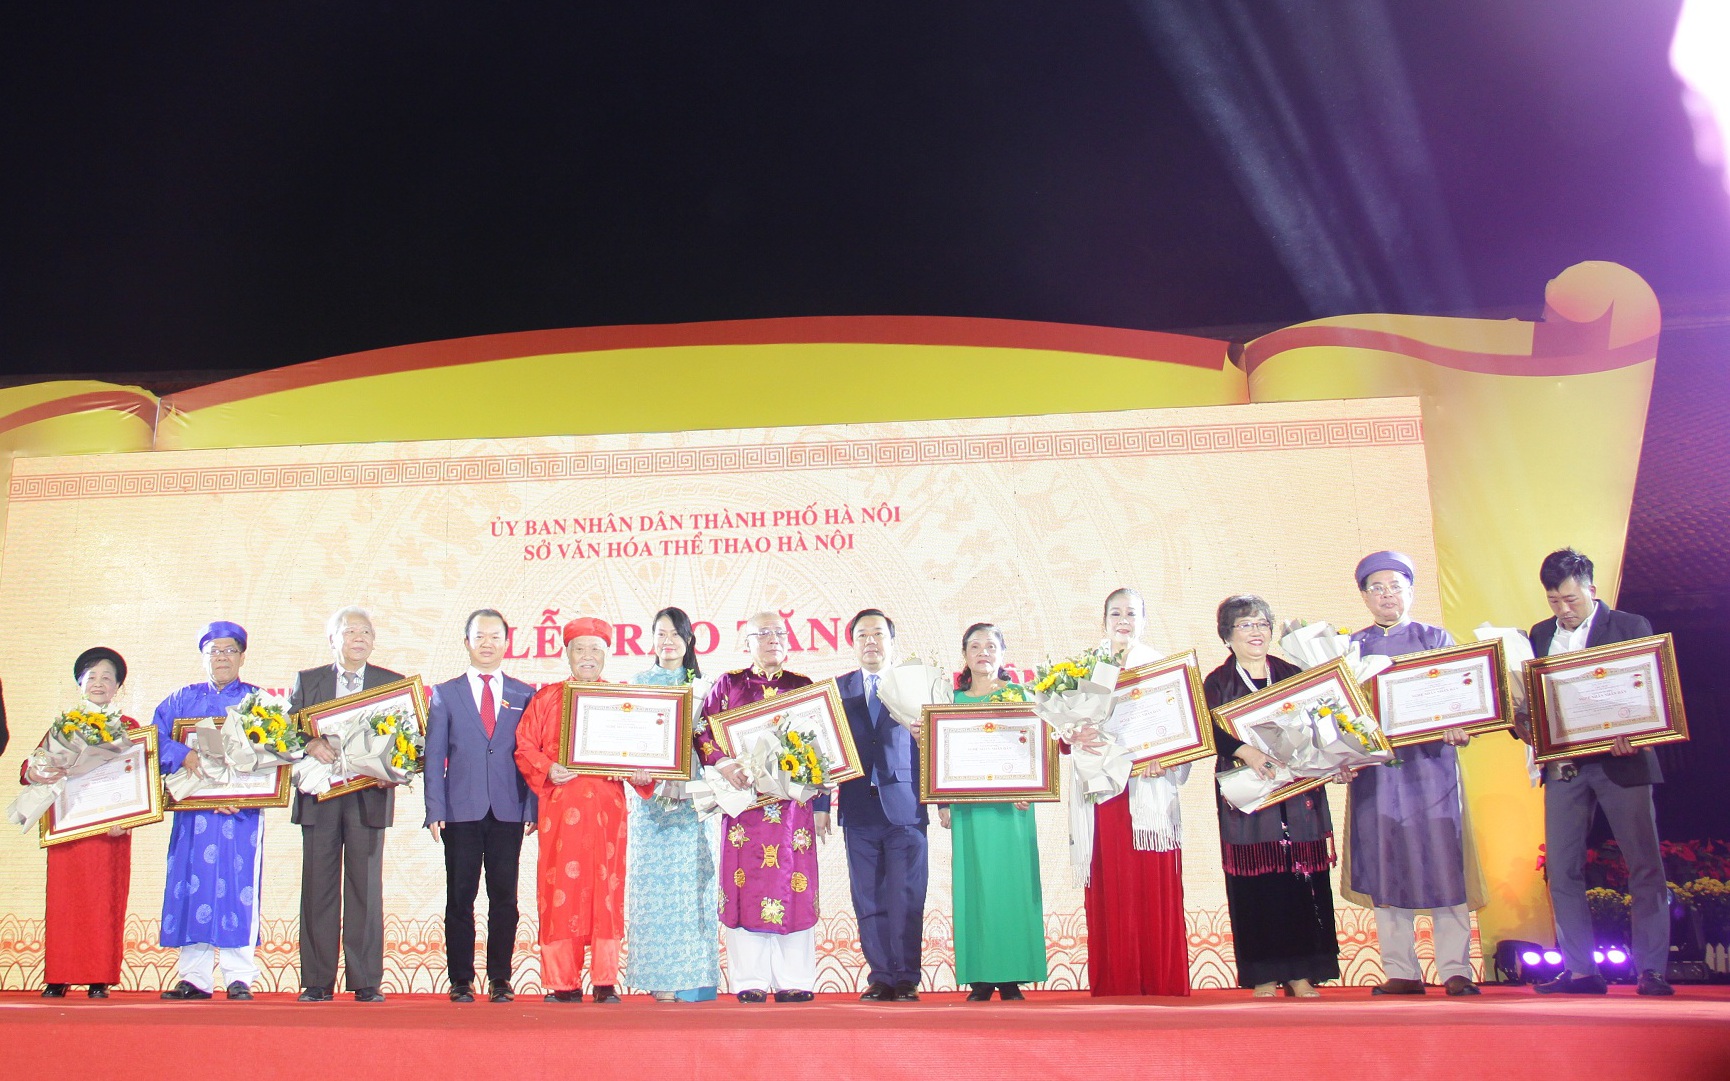 Nghệ nhân lớn tuổi nhất Hà Nội được trao tặng danh hiệu Nghệ nhân Ưu tú cùng ca nương 32 tuổi